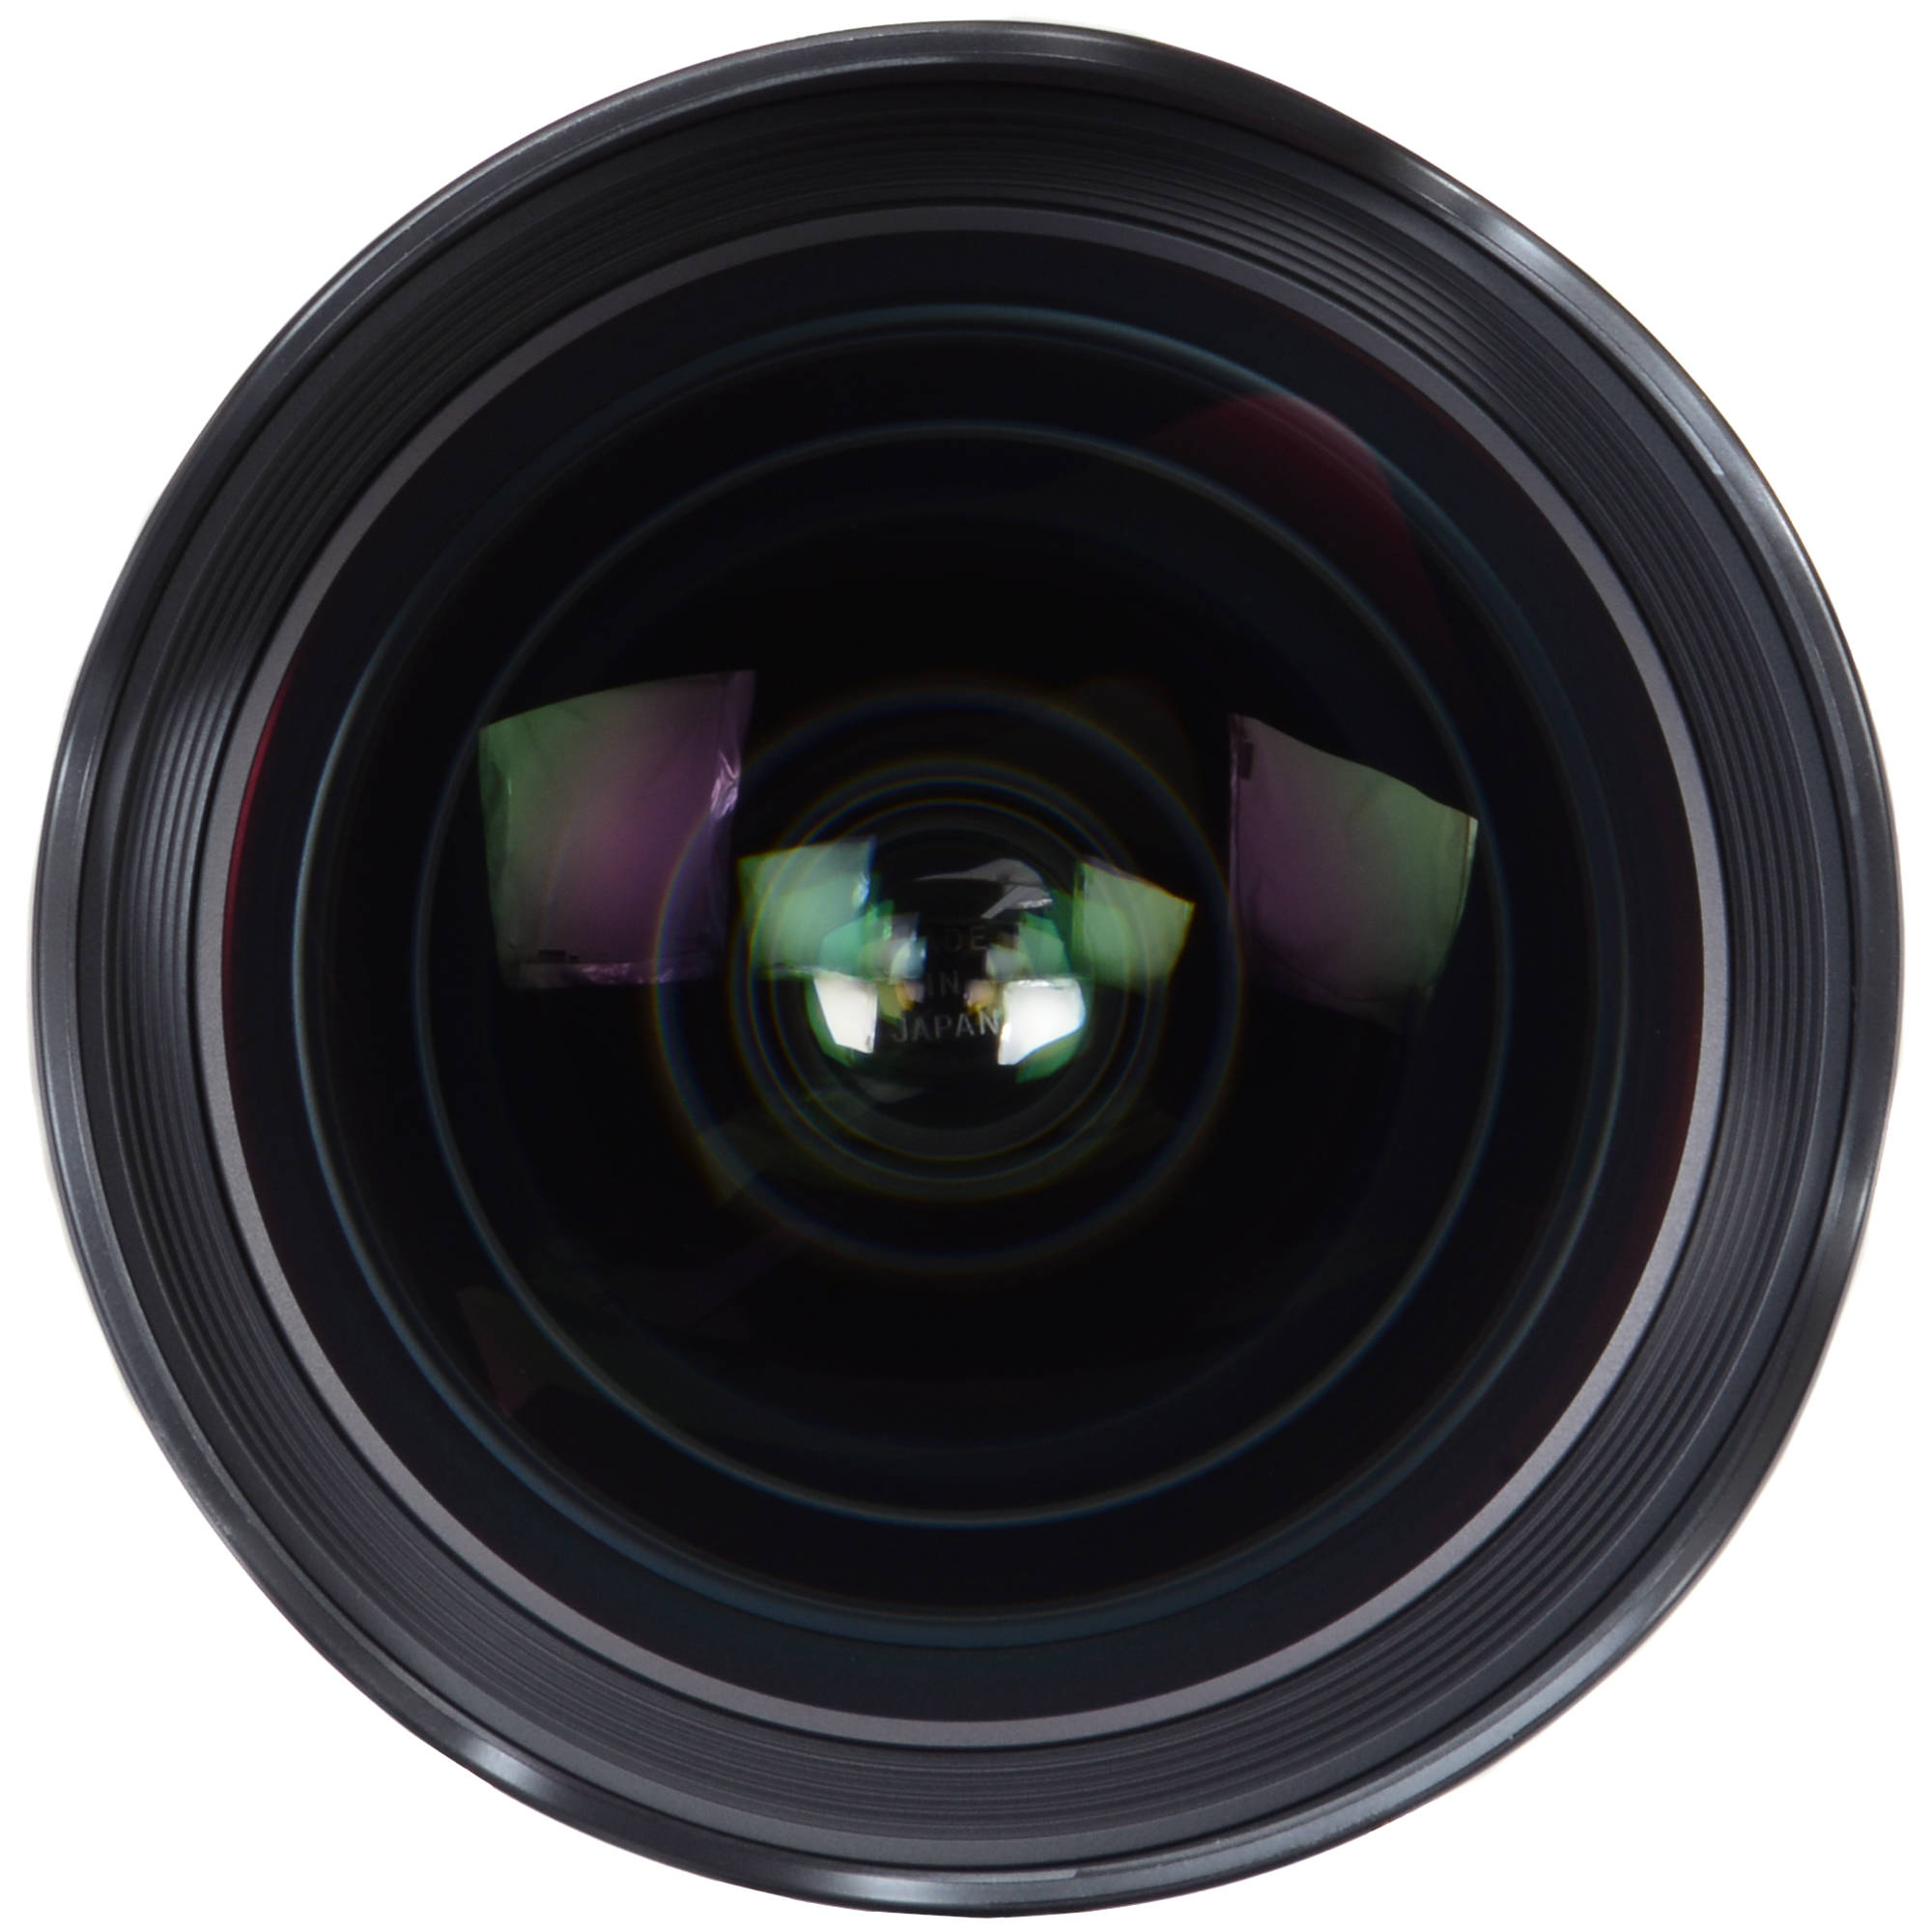 Sigma 20mm f1.4 tích hợp 2 thấu kính FLD, 5 thấu kính SLD và 2 thấu kính phi cầu